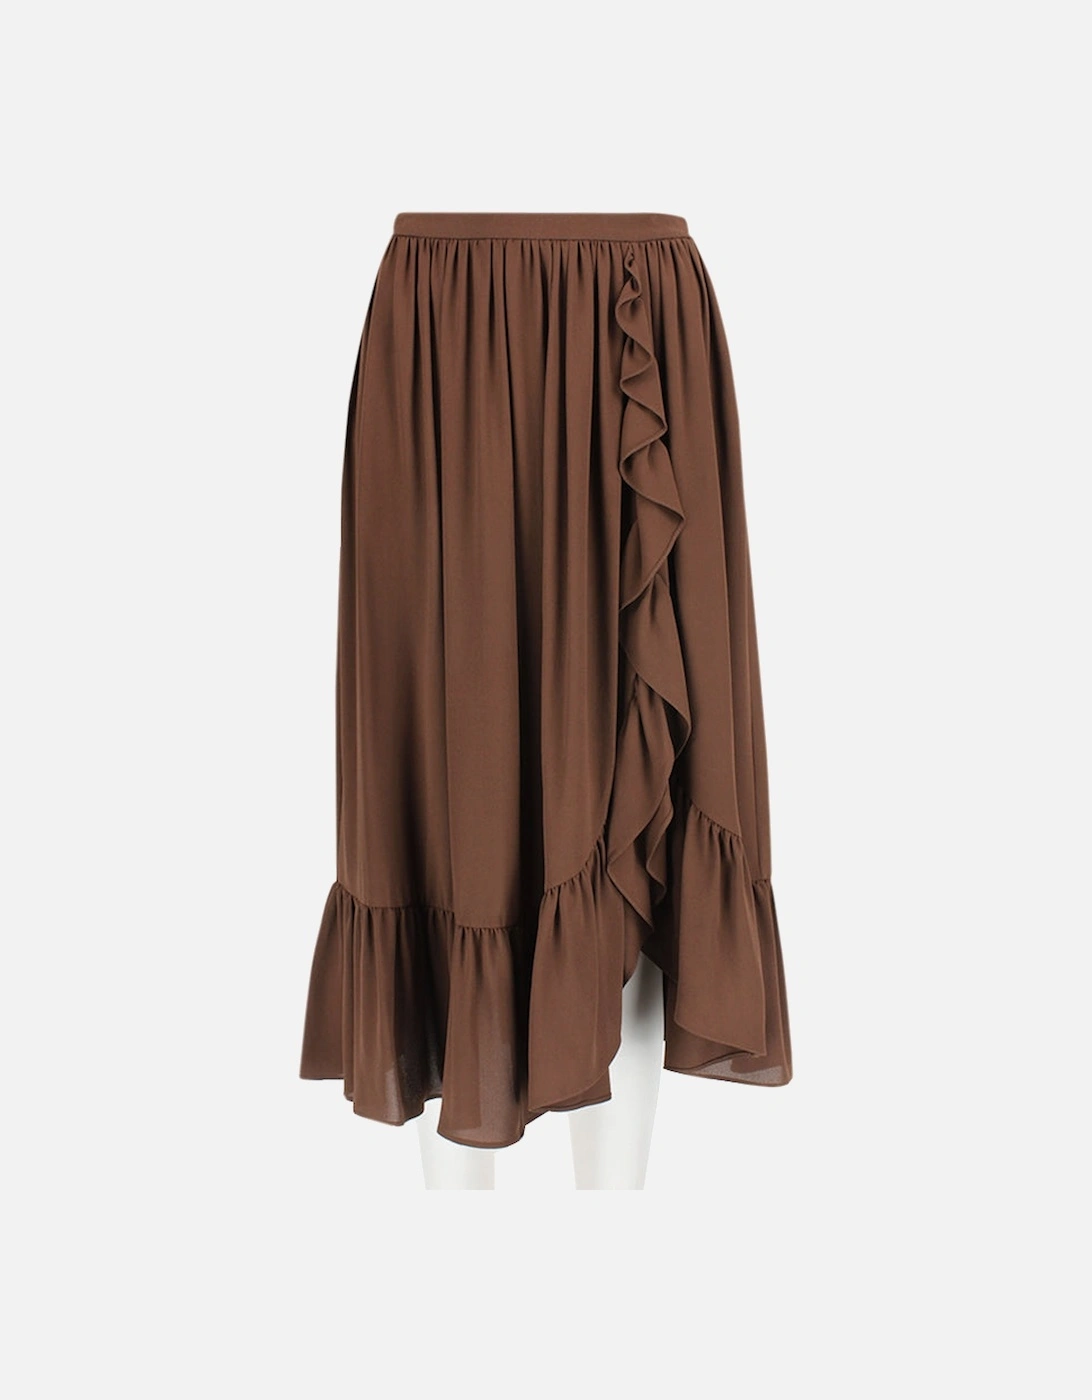 Skirt, 7 of 6